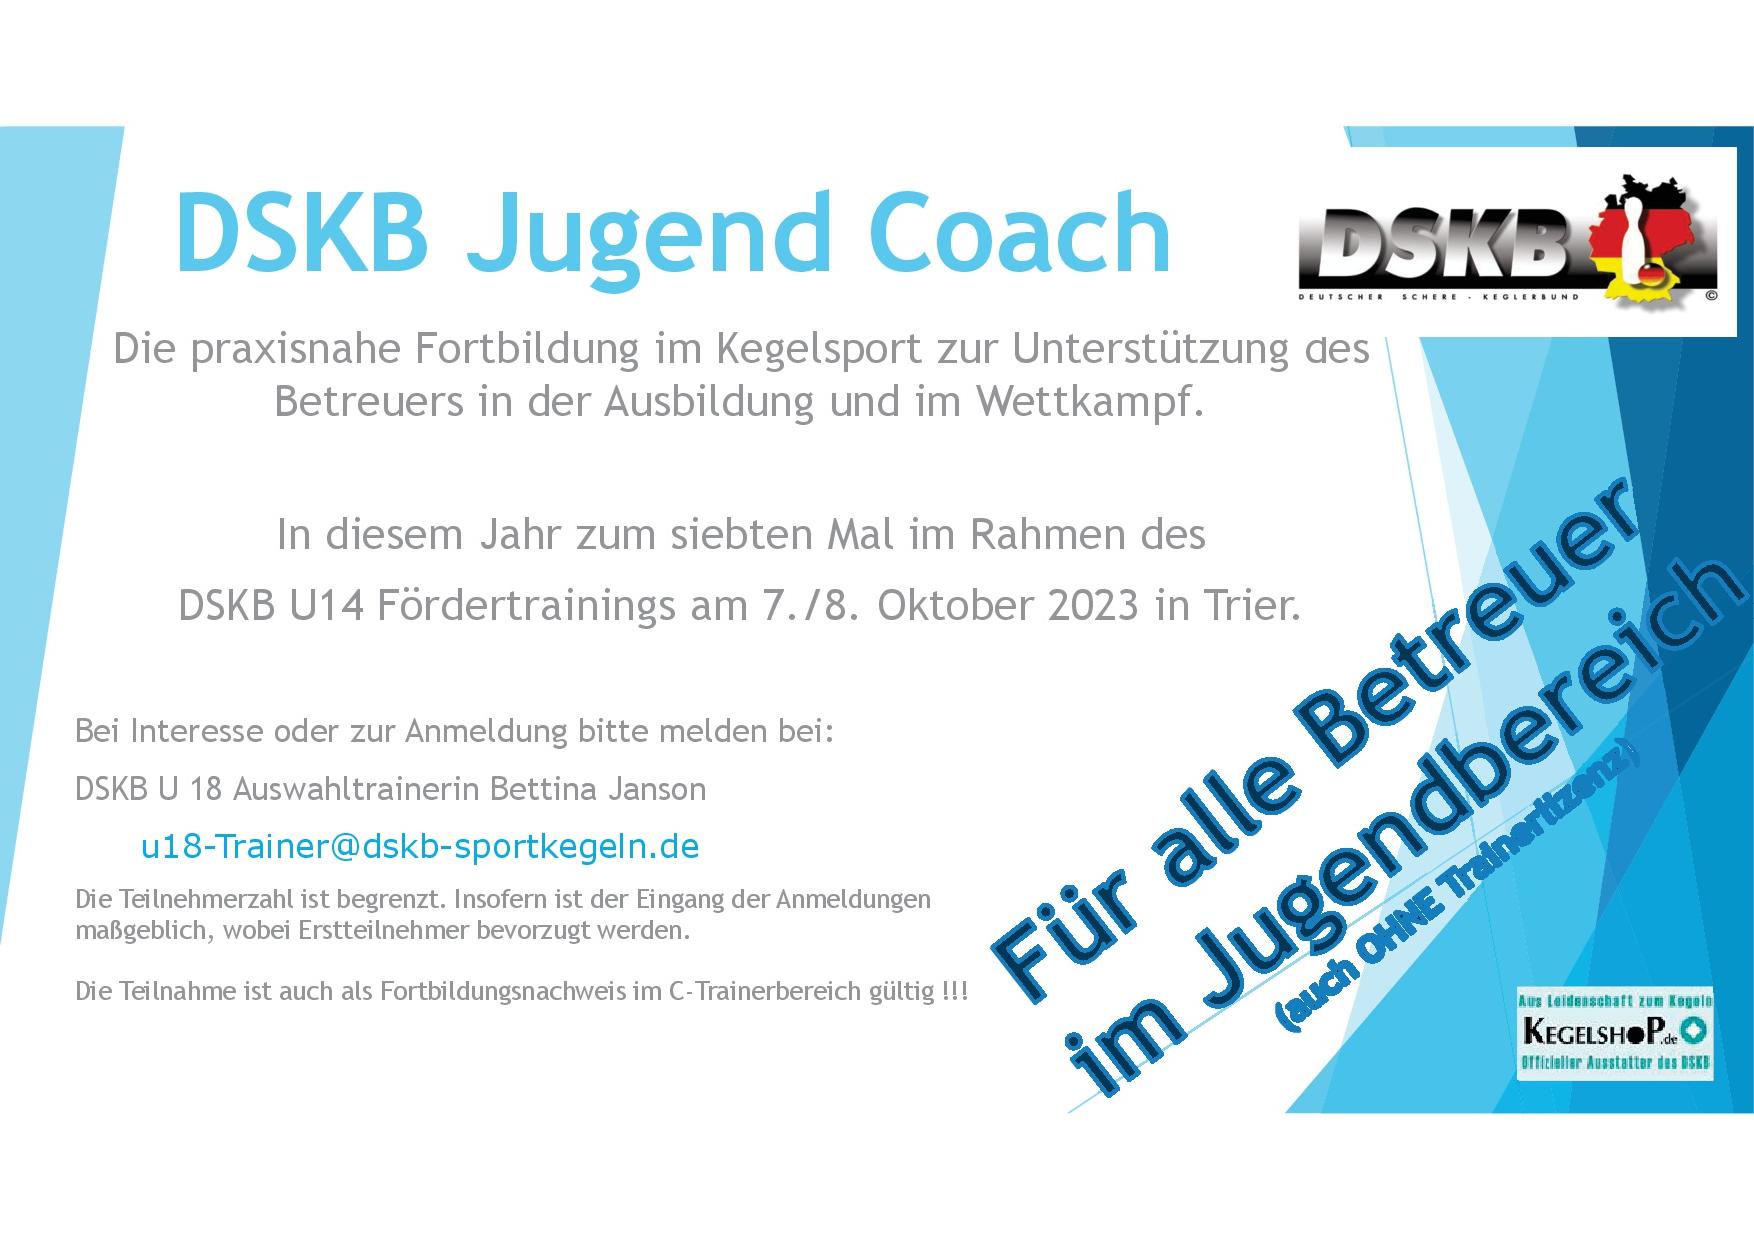 DSKB Jugend Coach